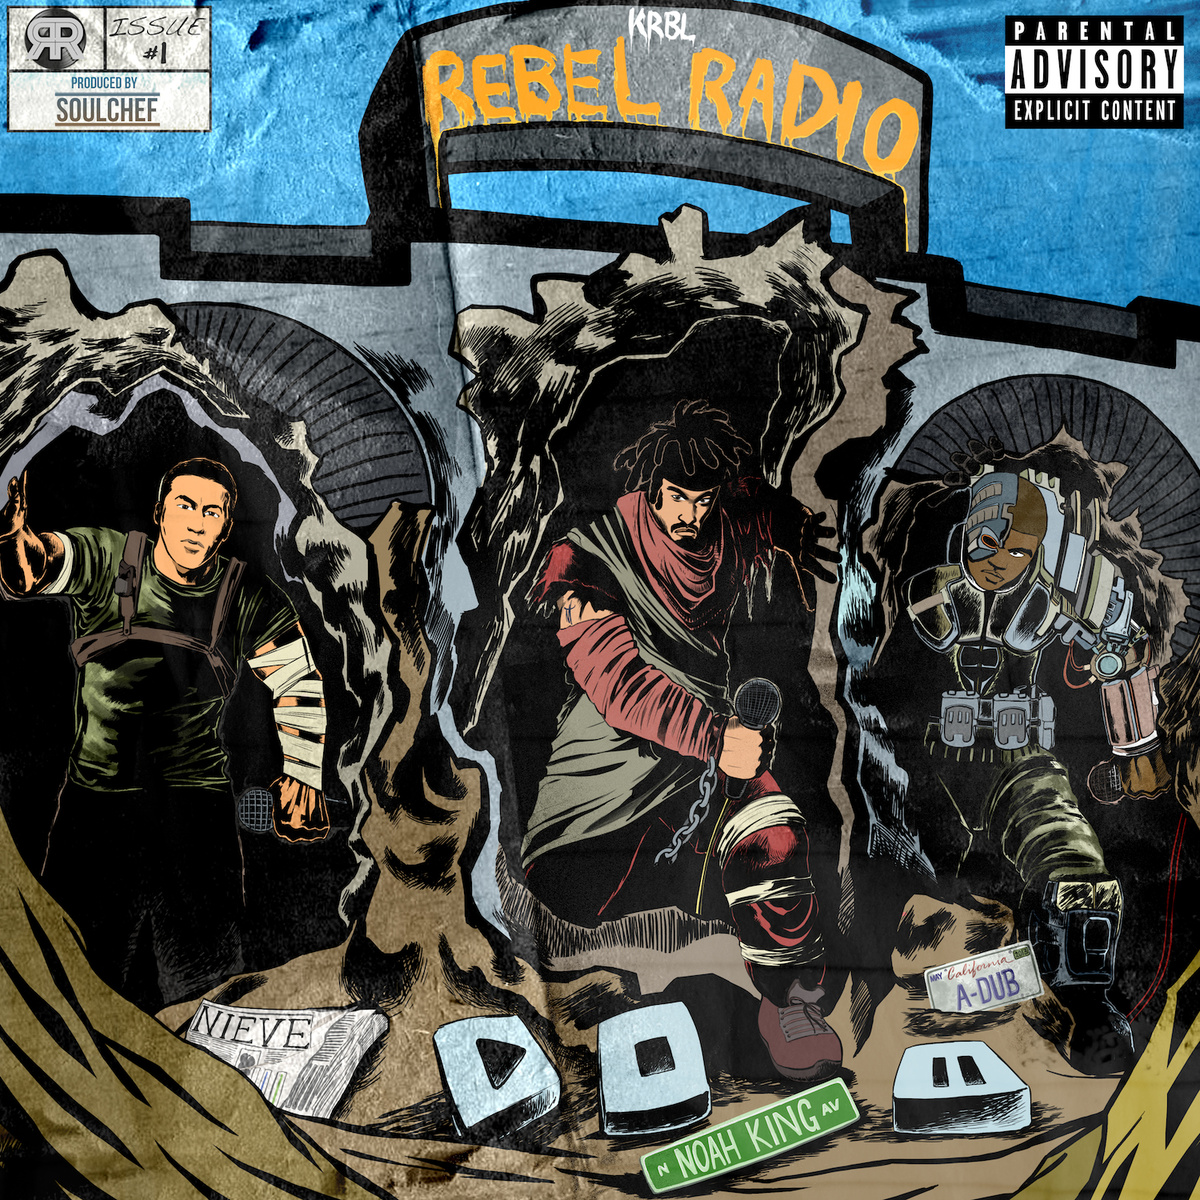 KRBL Rebel Radio "KRBL Rebel Radio" Release | @NieveHipHop @Noah_King